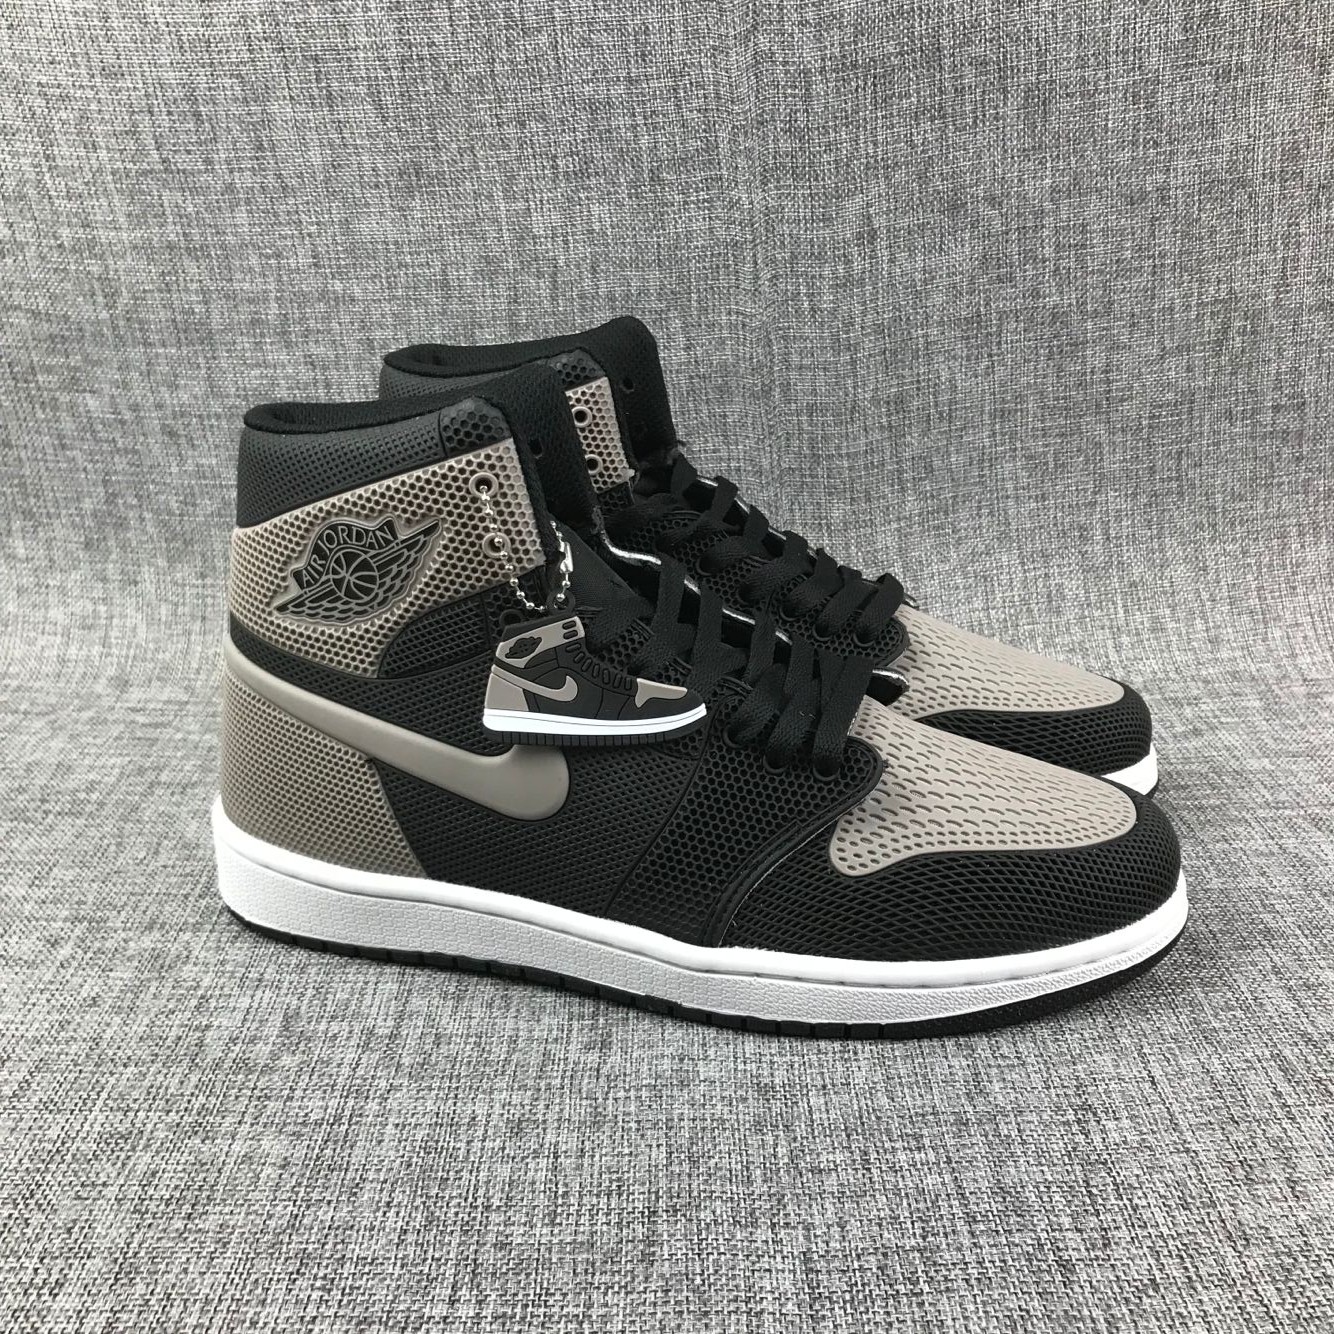 New Air Jordan 1 Drop Plastic Black Grey Shoes